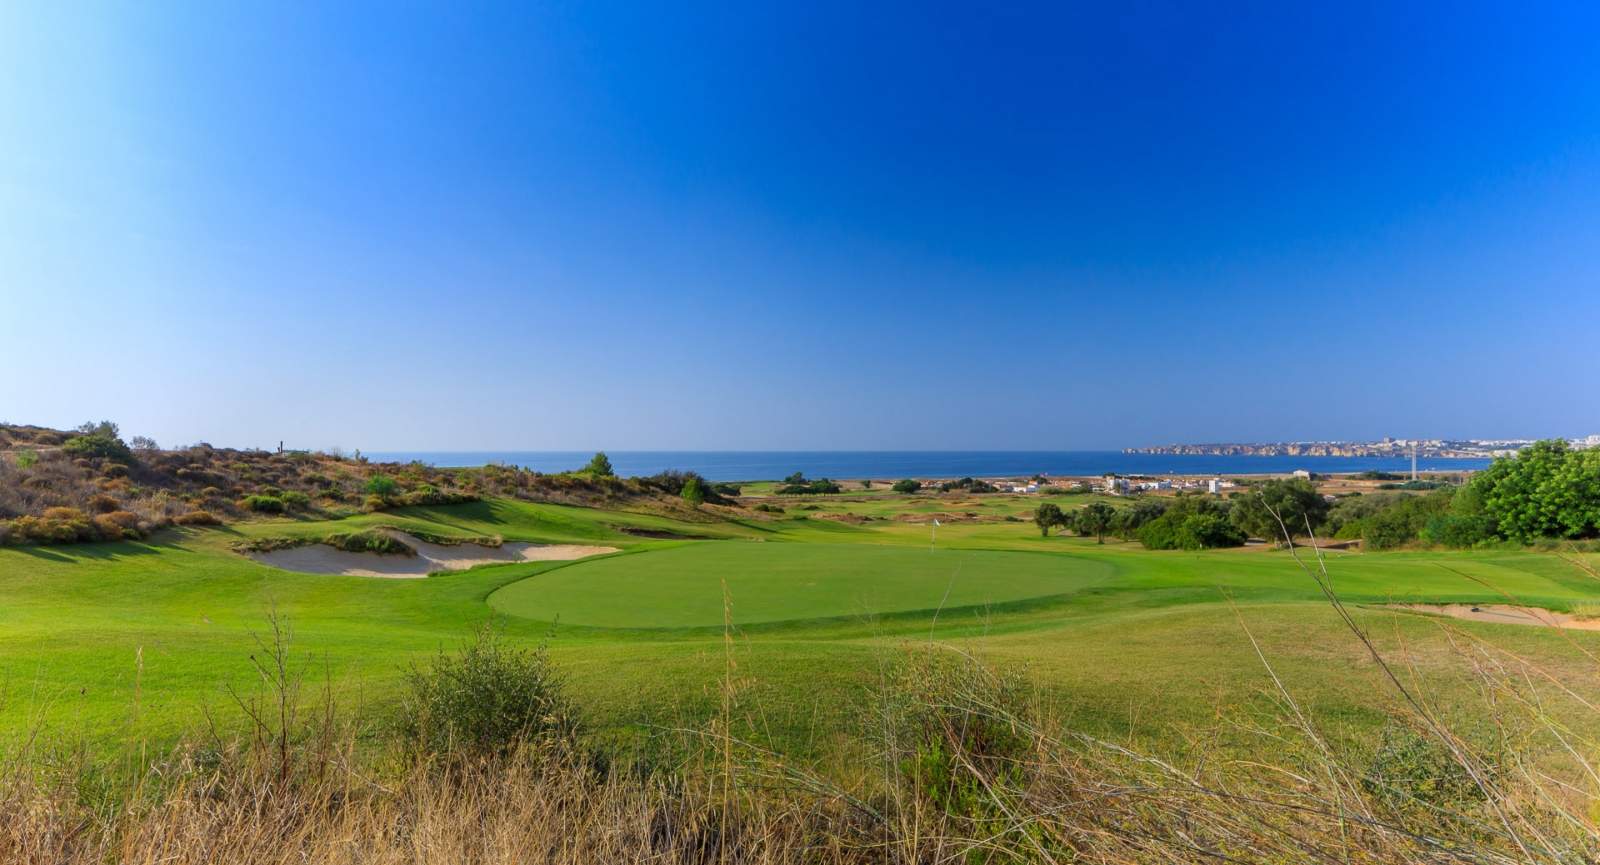 Terrain à vendre dans un complexe de golf, Lagos, Algarve, Portugal_122914